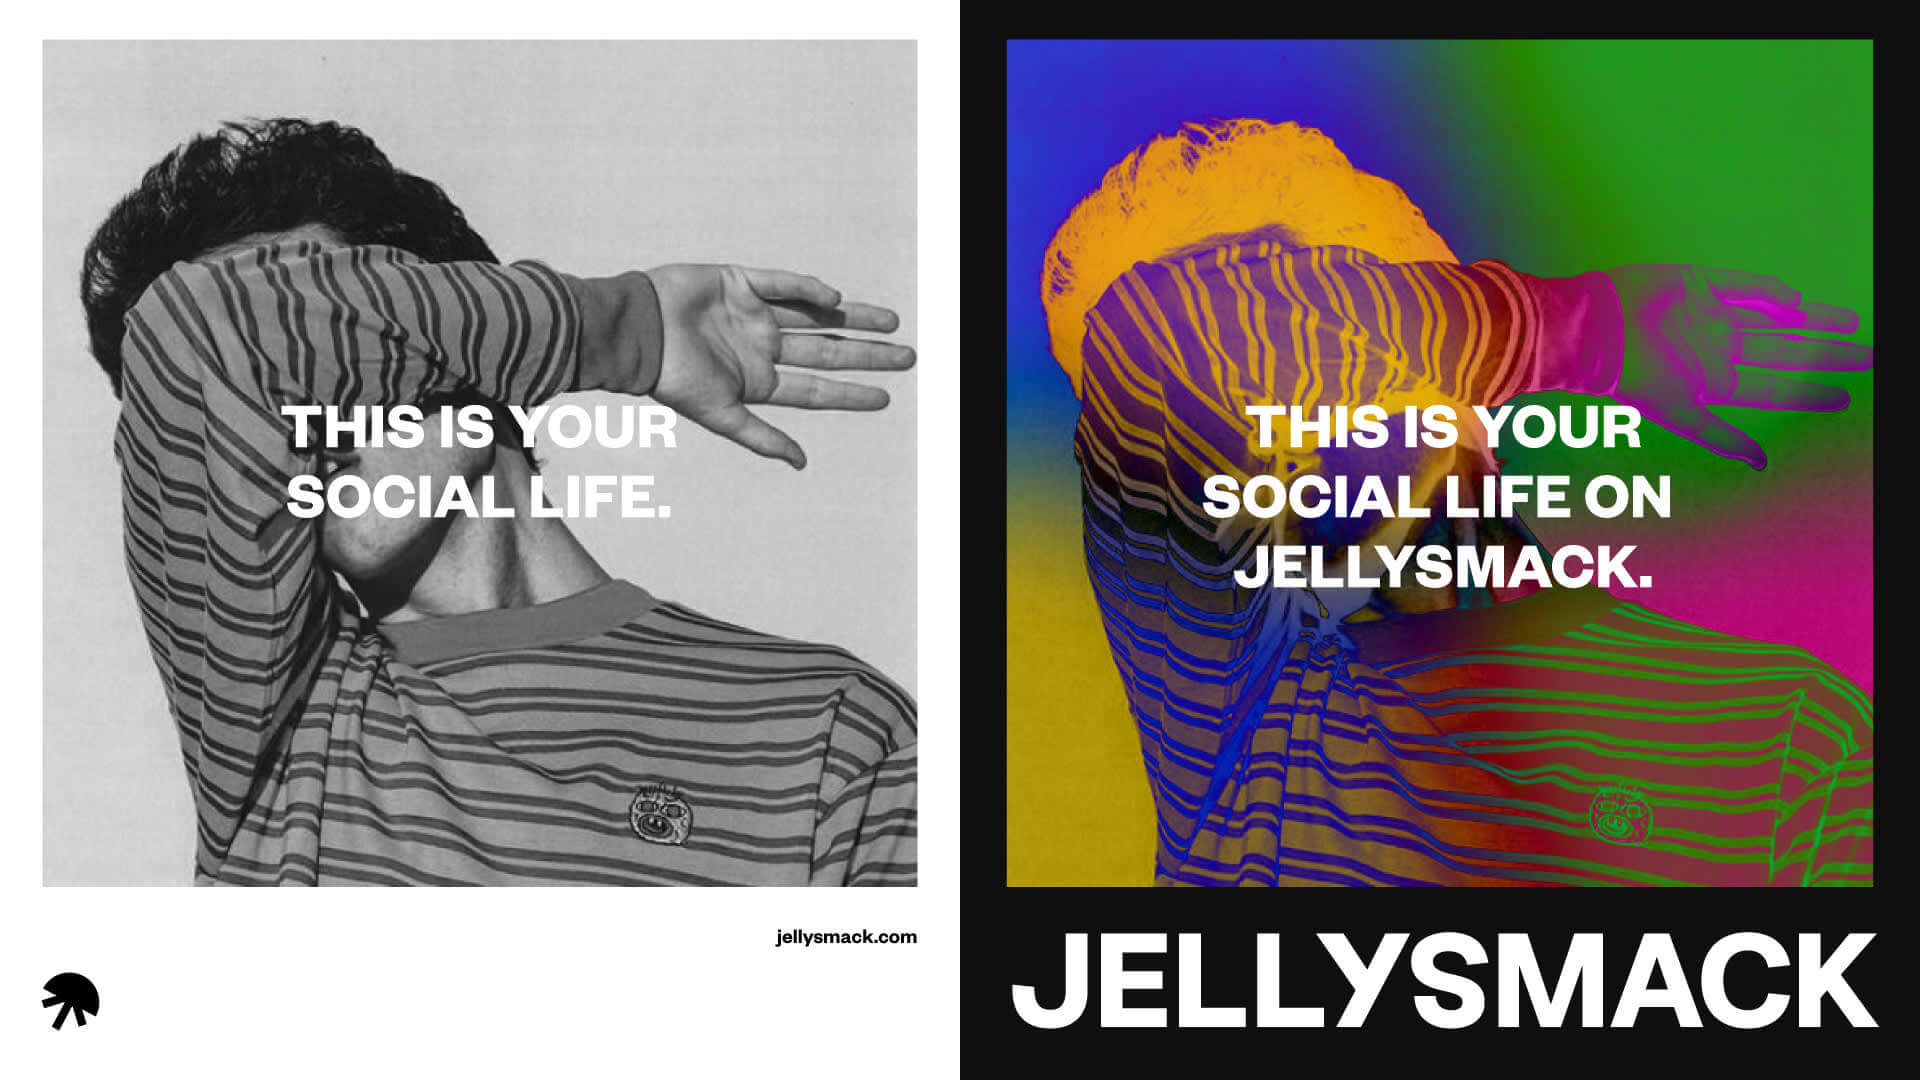 これがJellysmackのポスターでのあなたのソーシャルライフです。